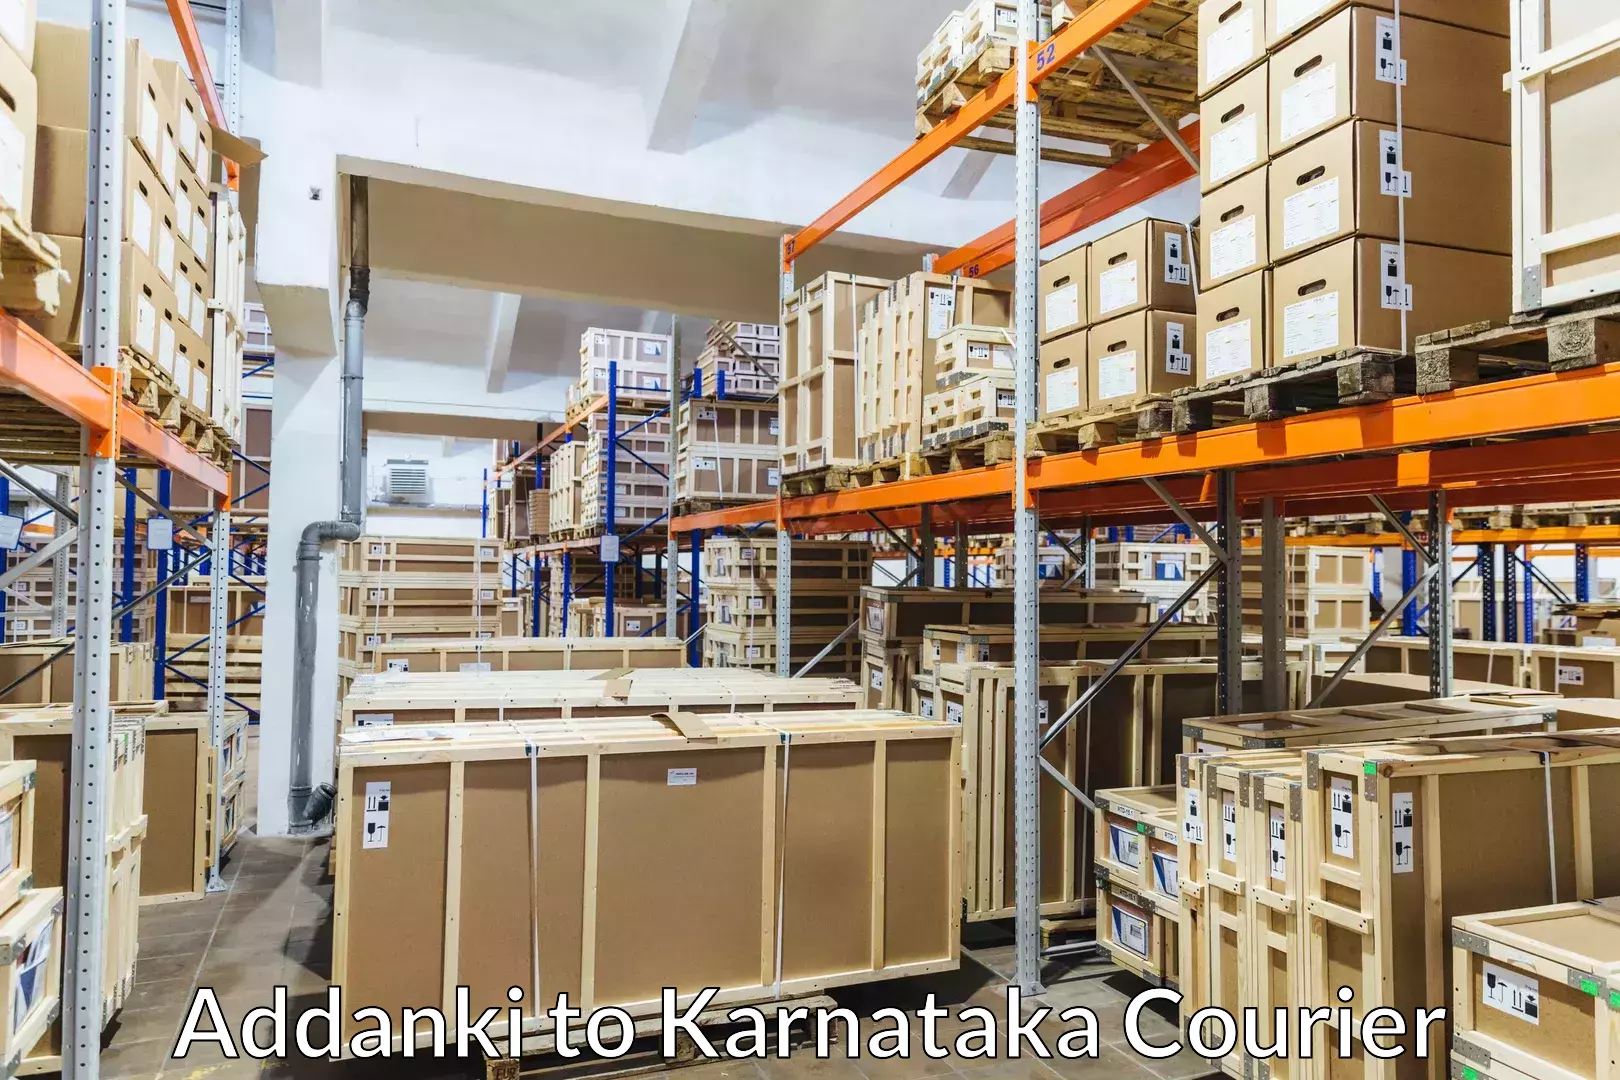 Quality household movers Addanki to Karnataka